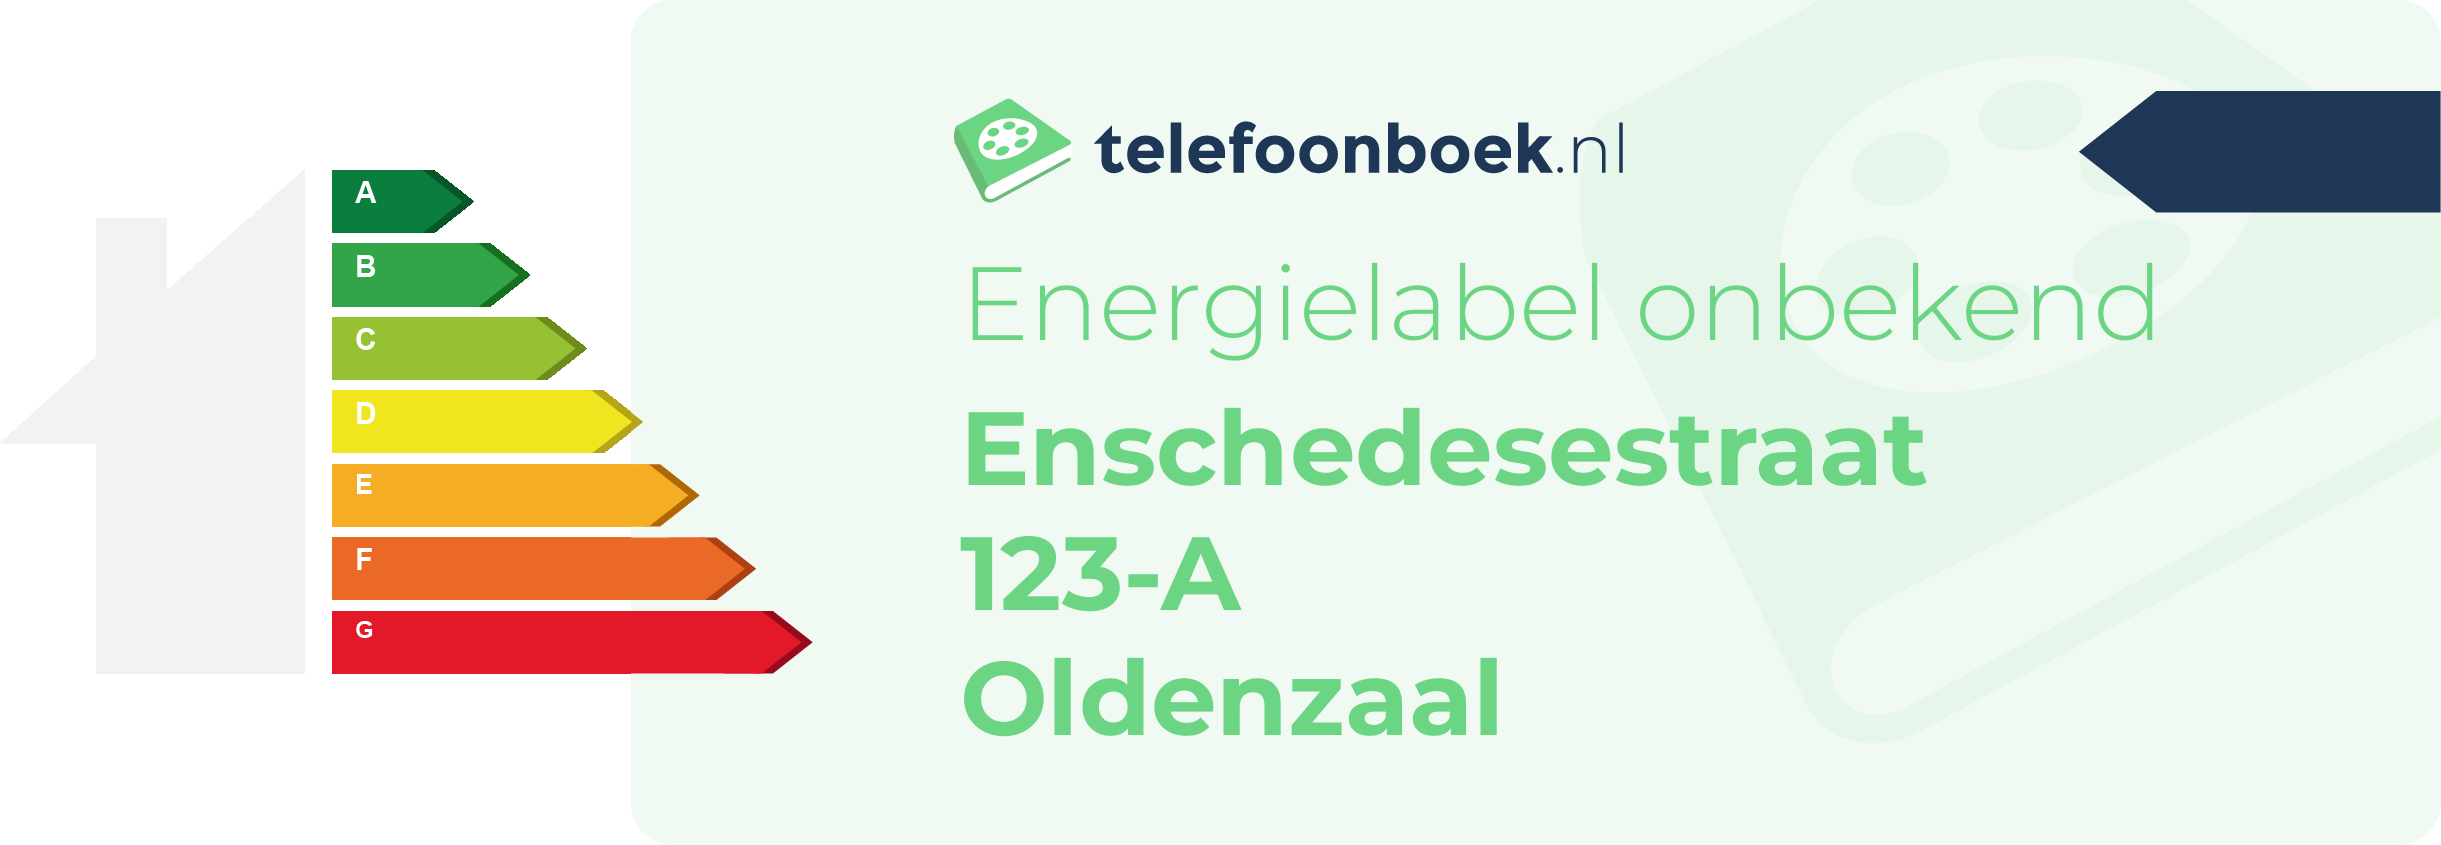 Energielabel Enschedesestraat 123-A Oldenzaal